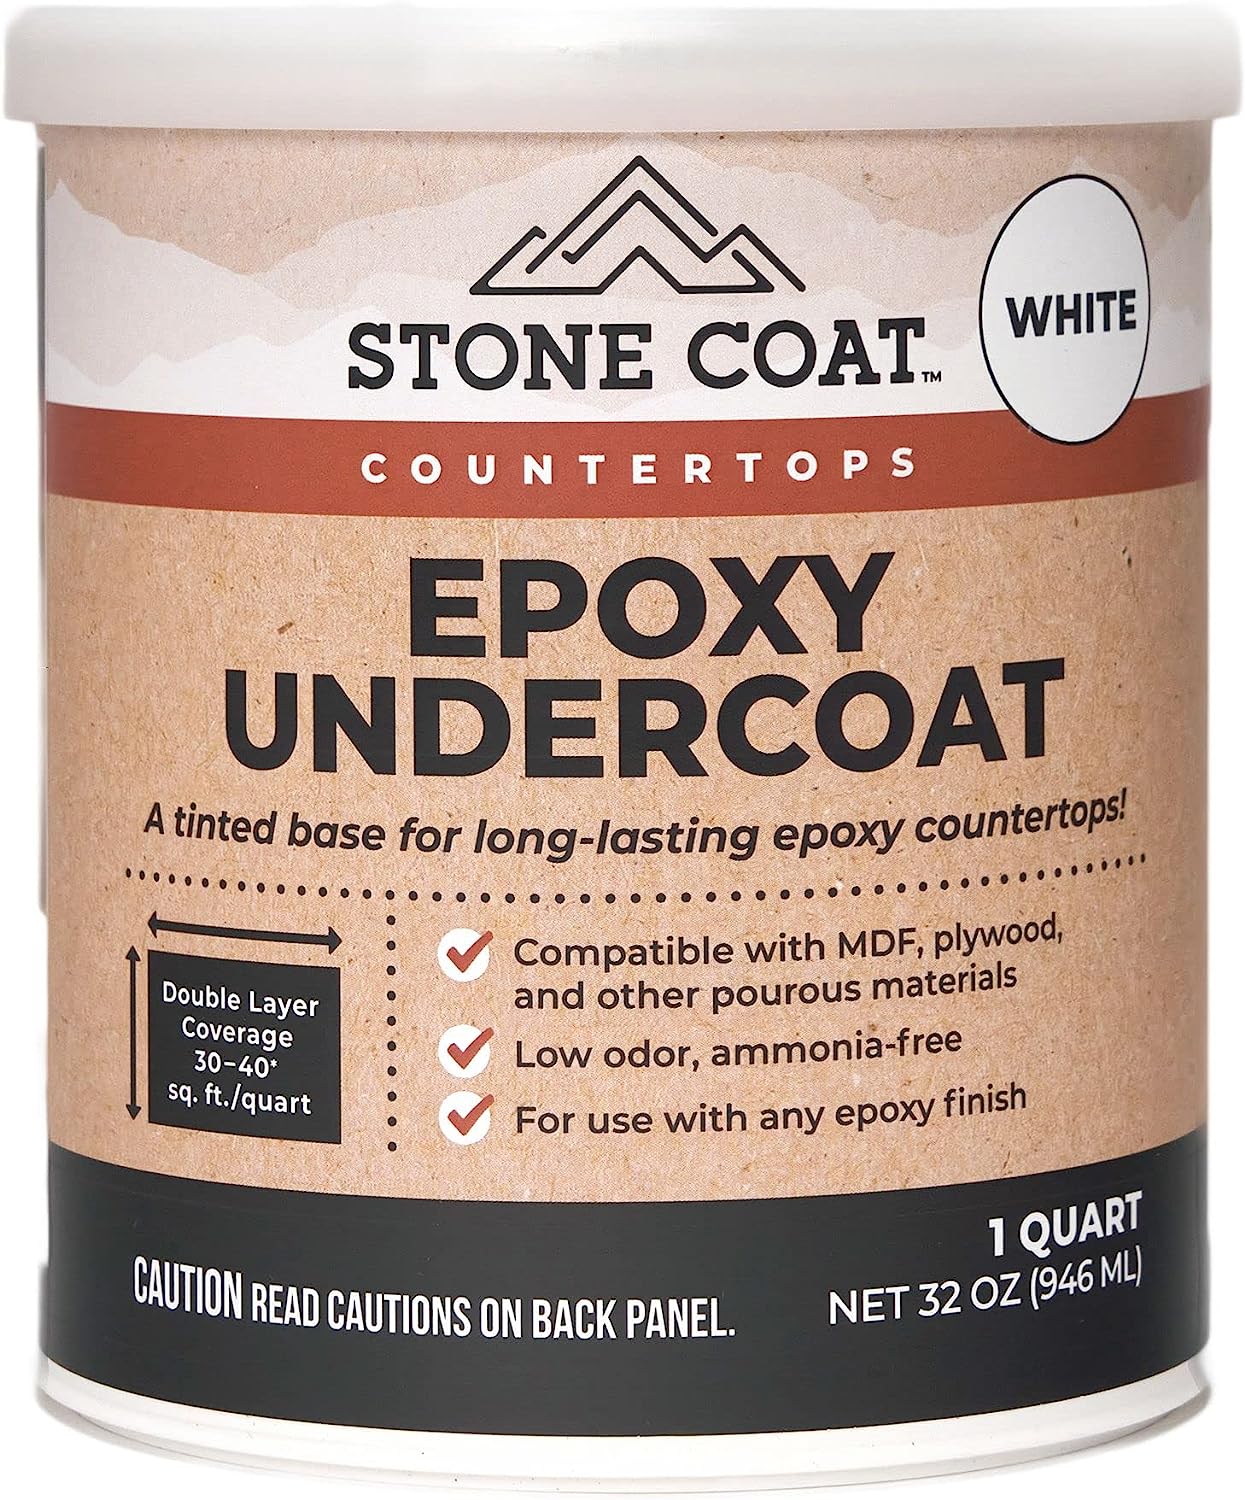 Stone Coat Countertops White Epoxy Undercoat – Epoxy [...]